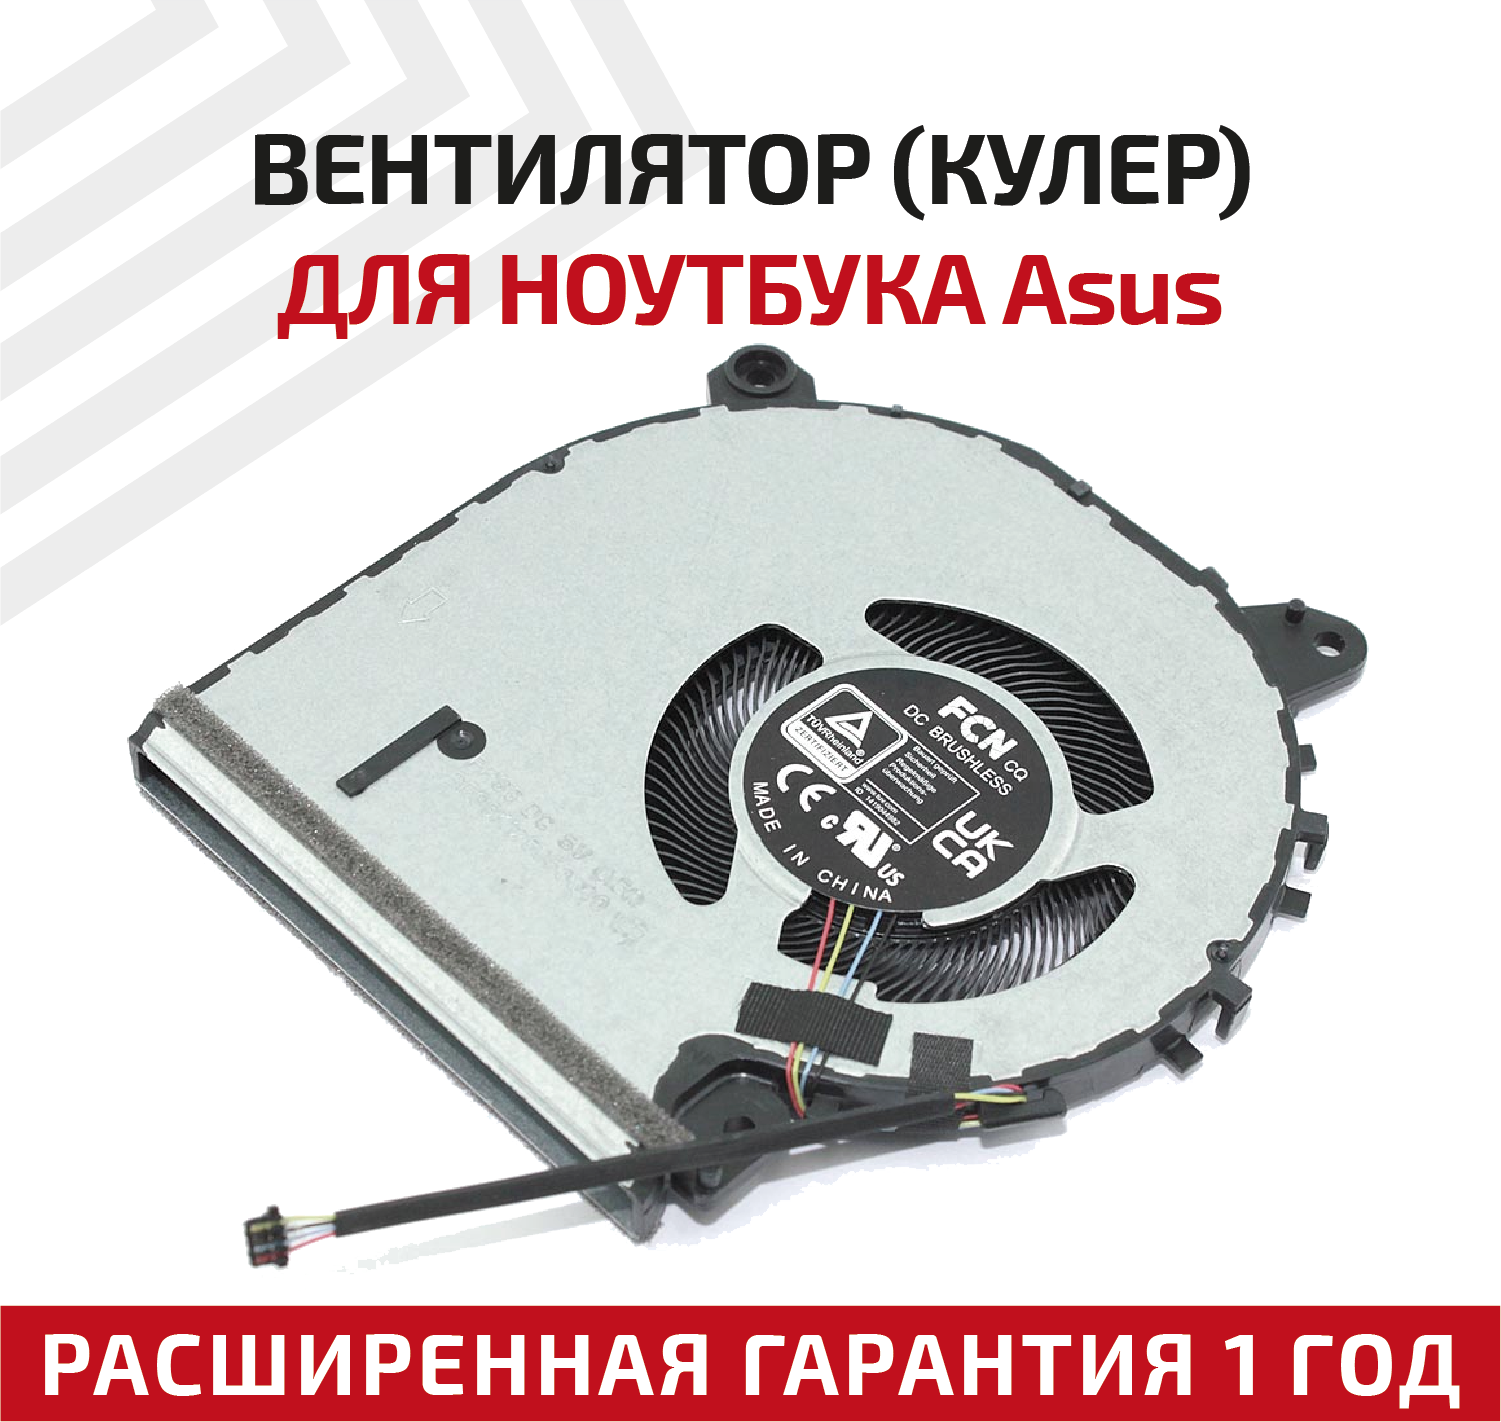 Вентилятор (кулер) для ноутбука Asus VivoBook 15 F515, X515, X515MA